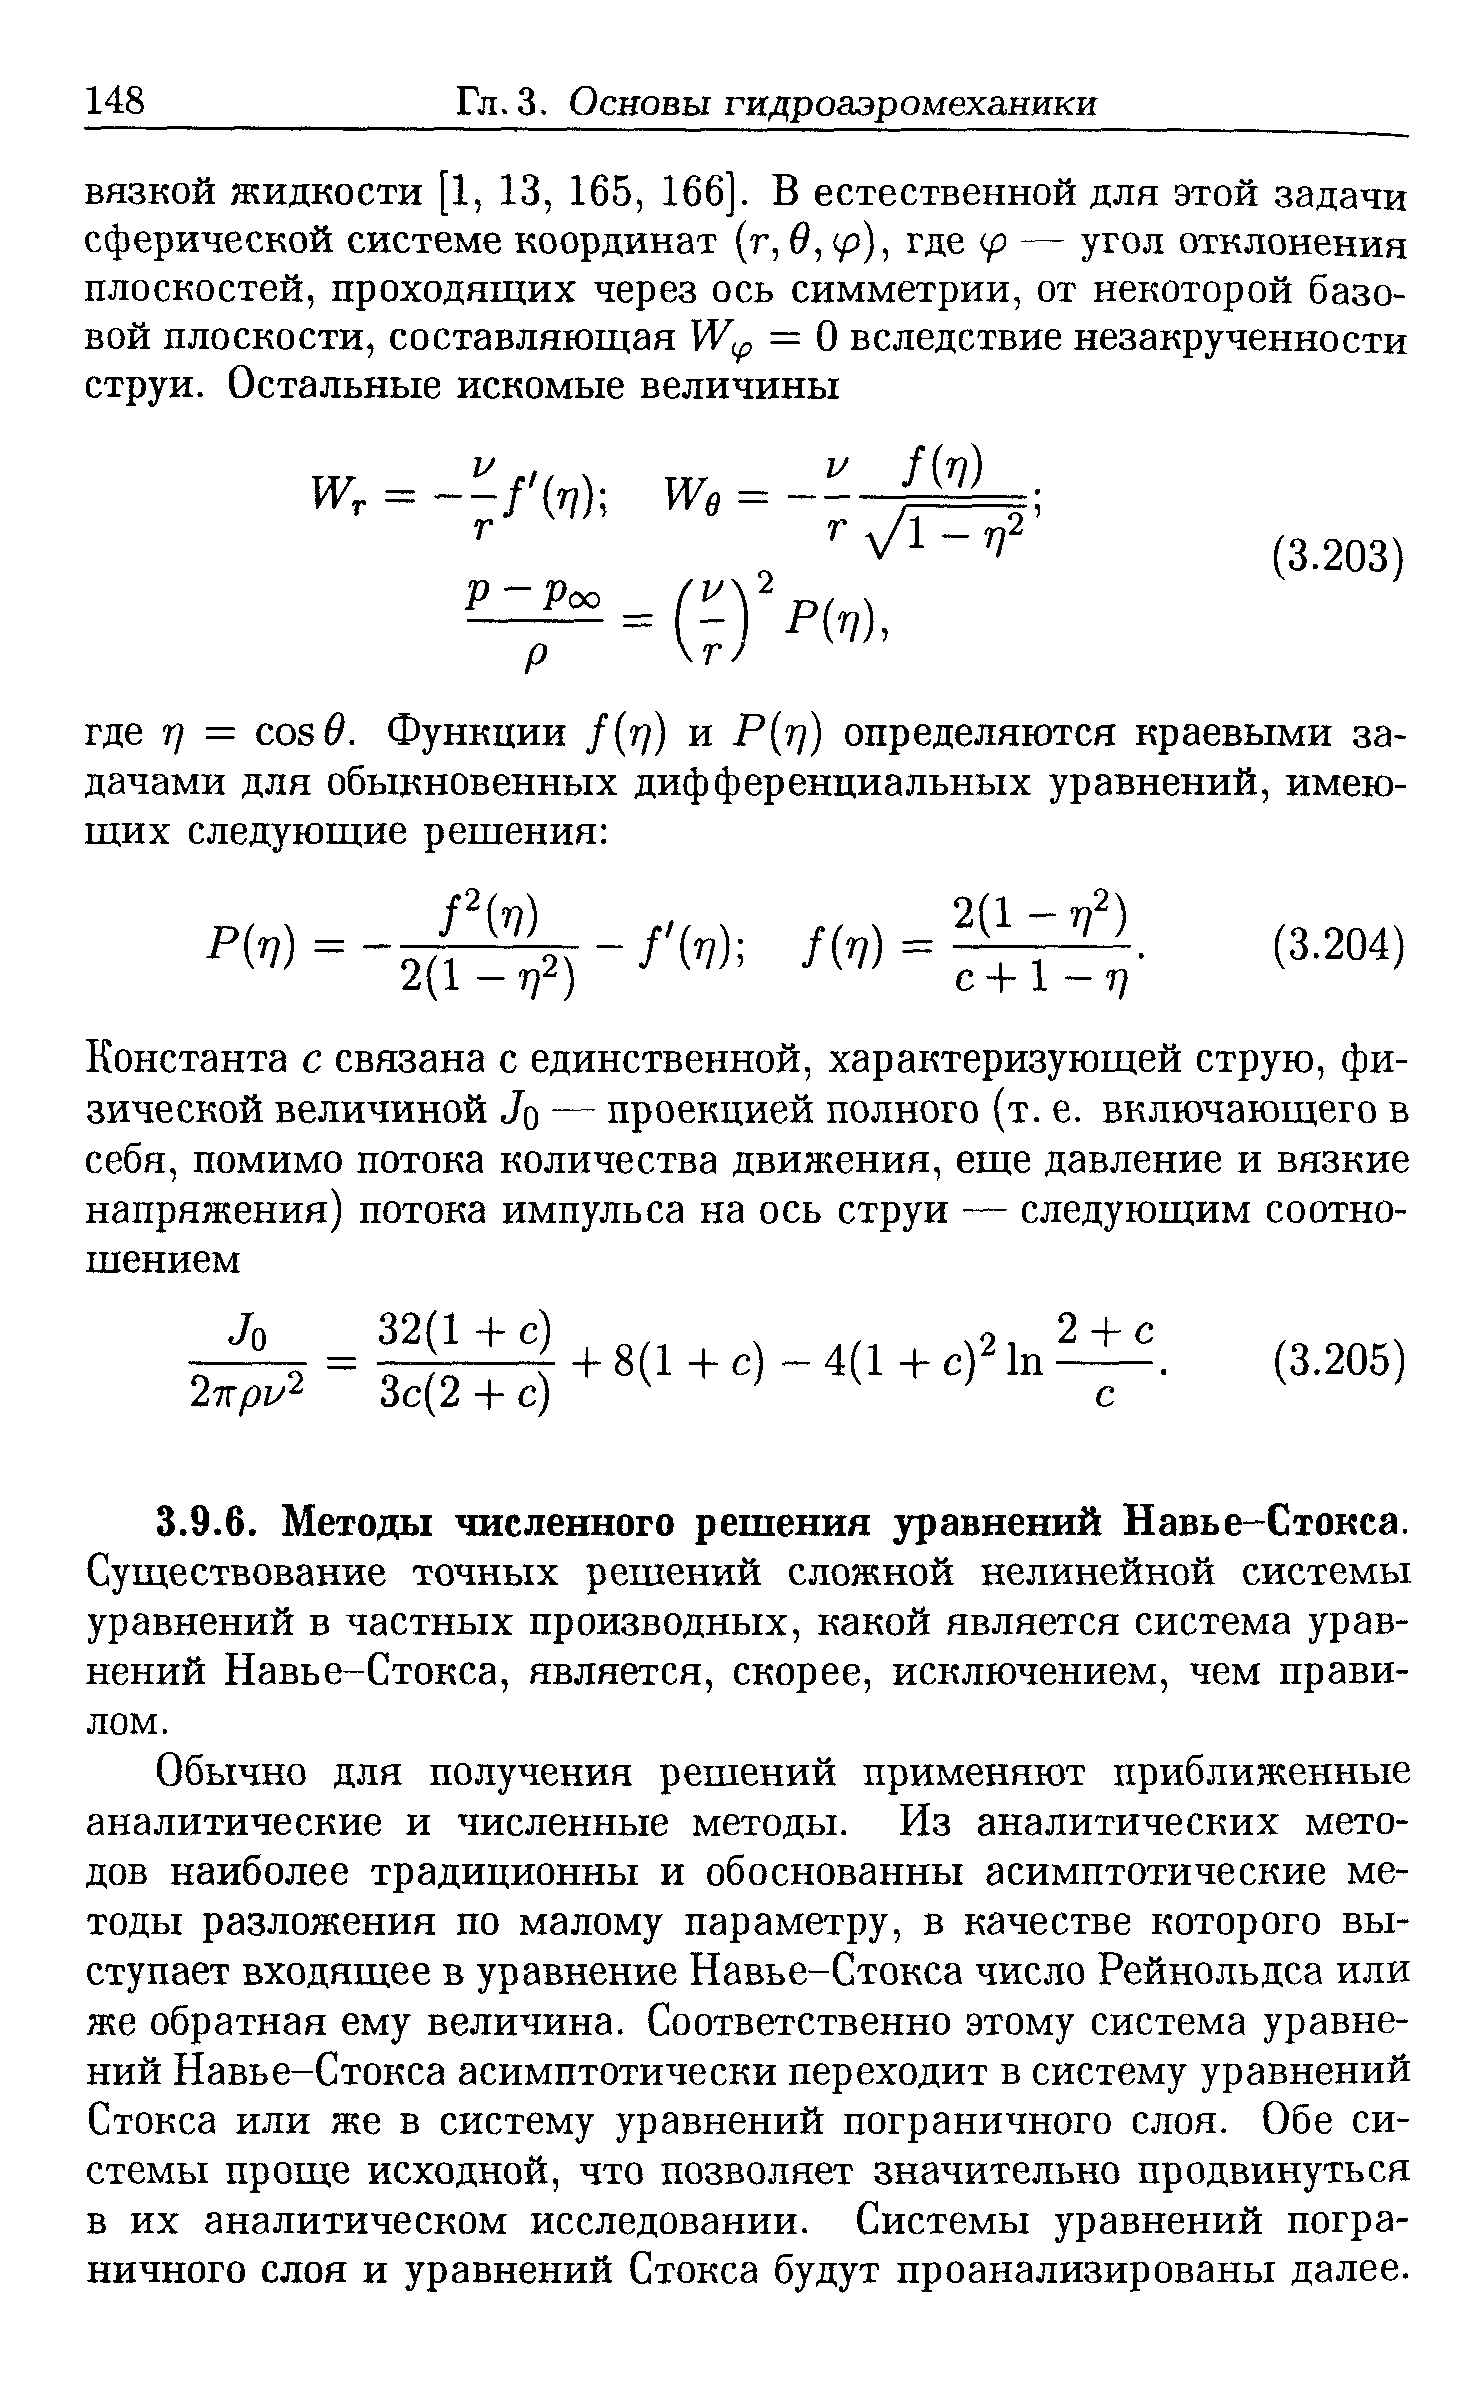 Существование точных решений сложной нелинейной системы уравнений в частных производных, какой является система уравнений Навье-Стокса, является, скорее, исключением, чем правилом.